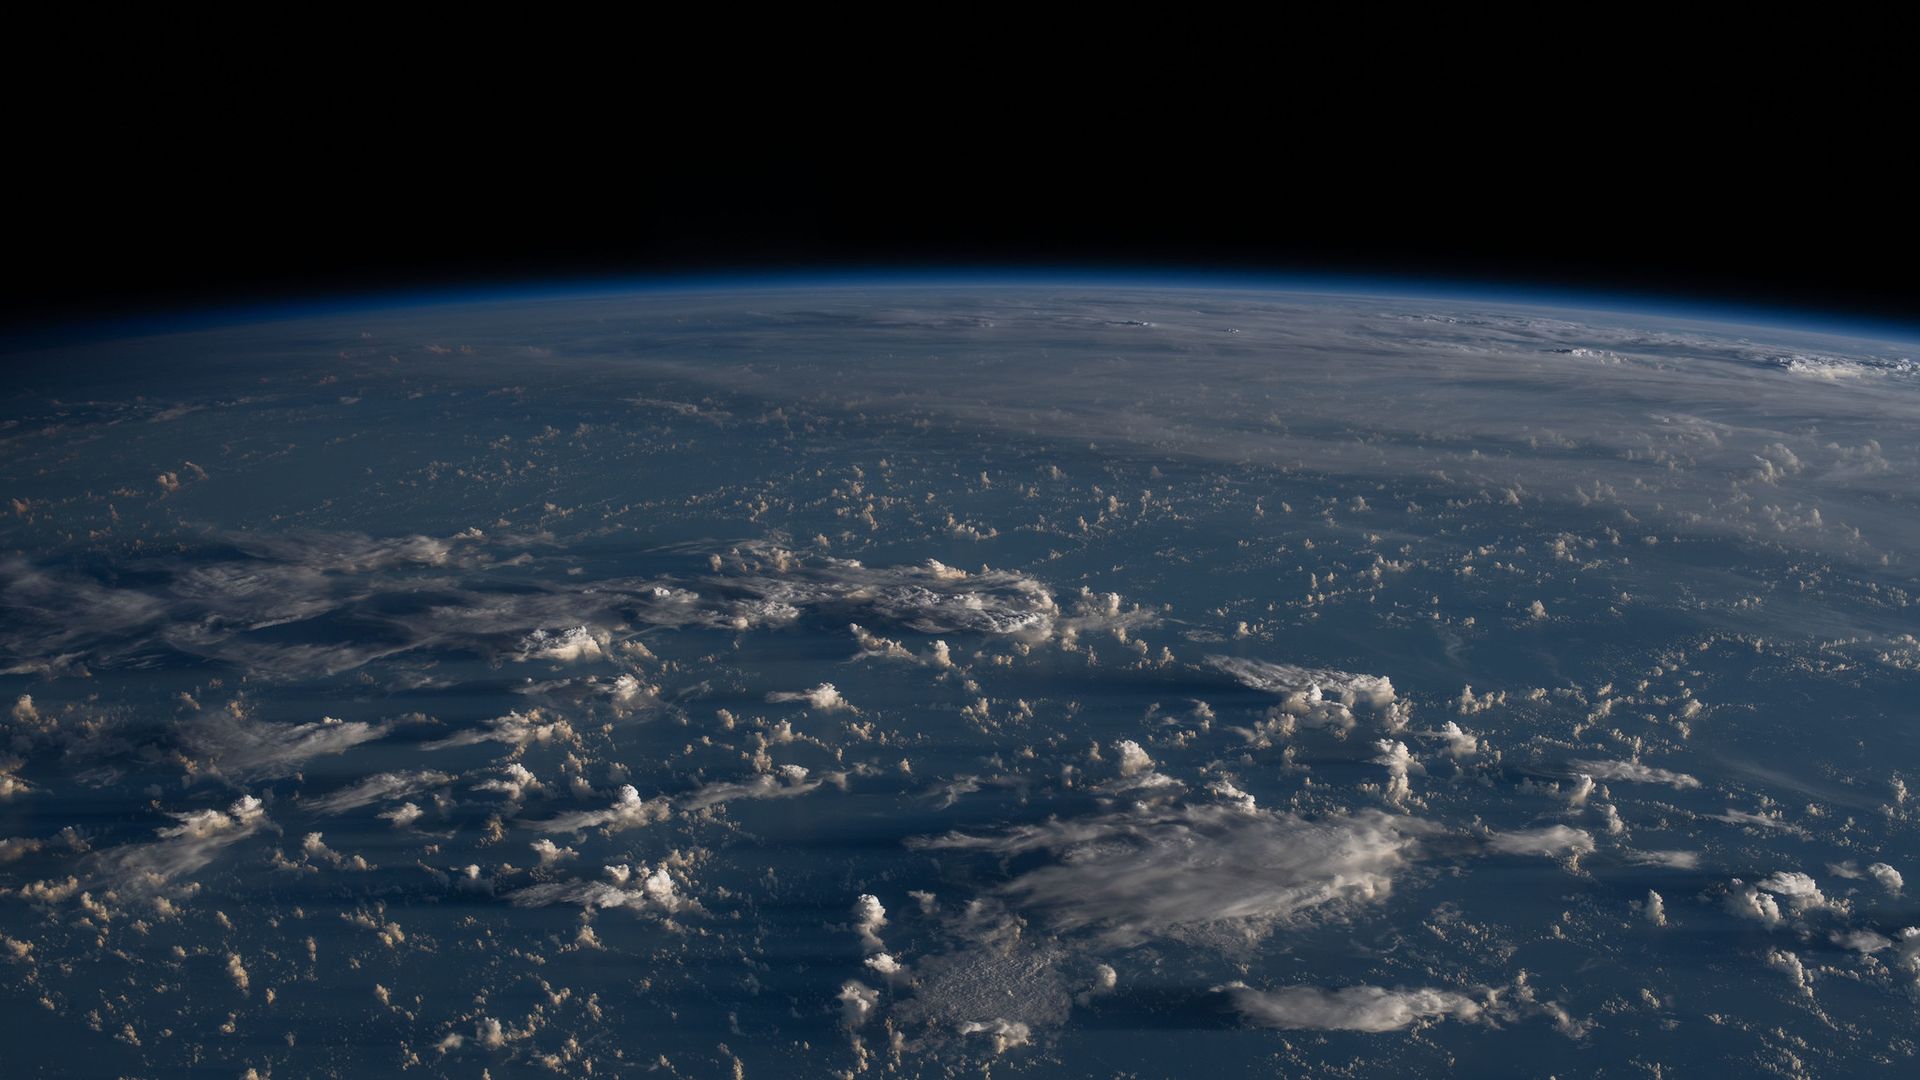 Earth as seen from orbit